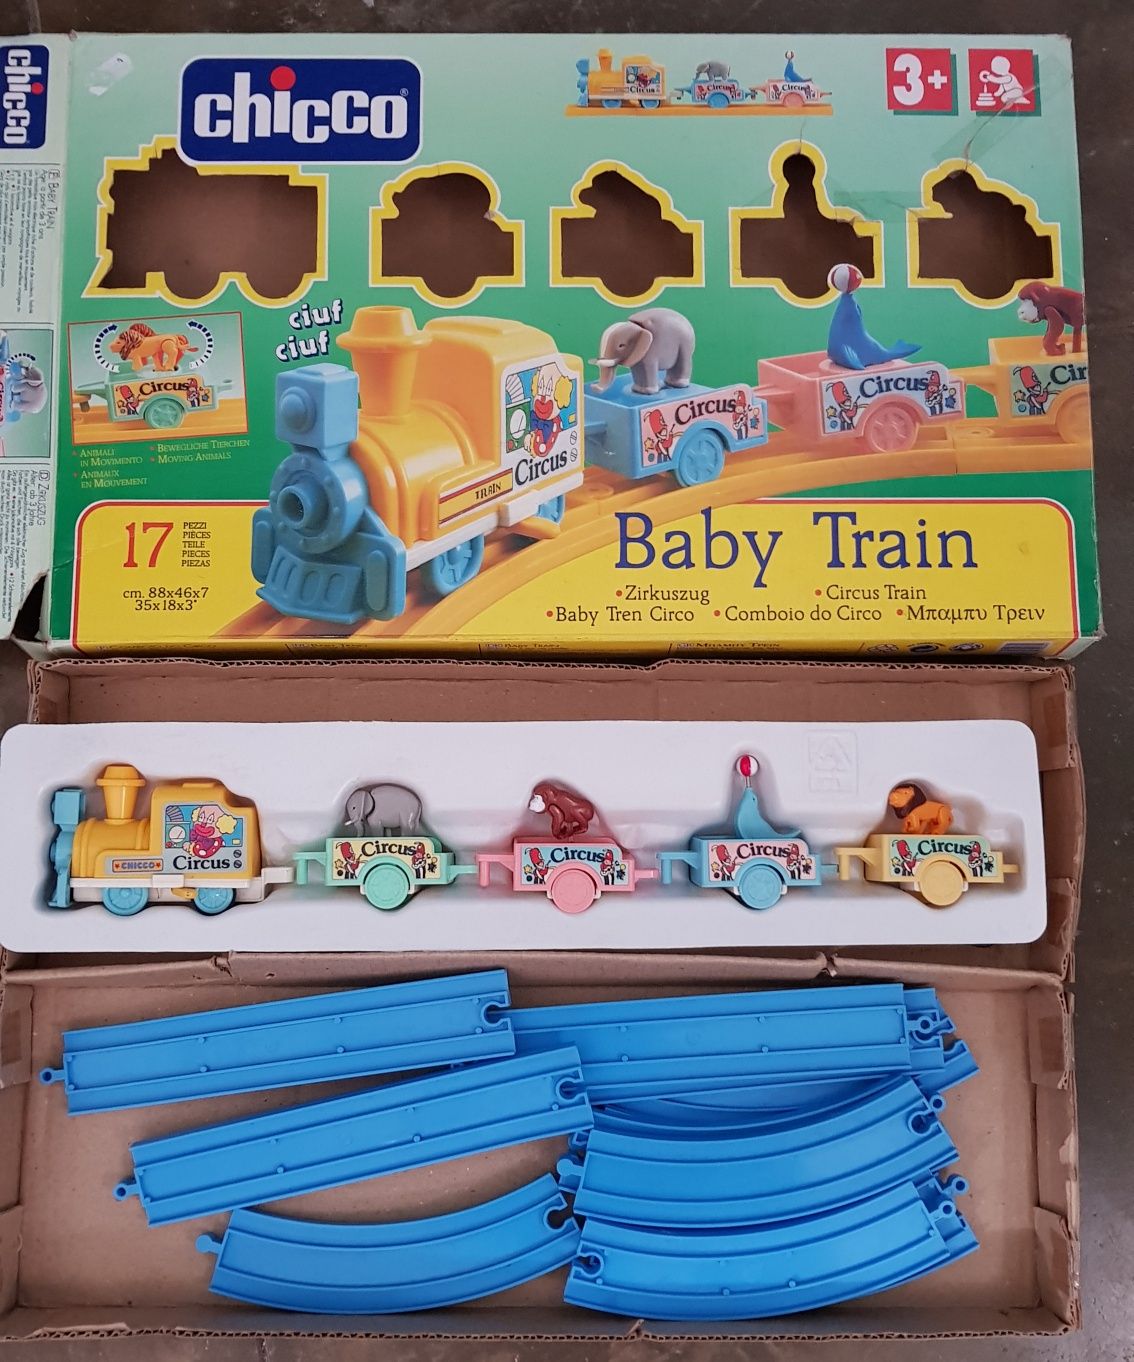 Pista Baby Train da Chicco